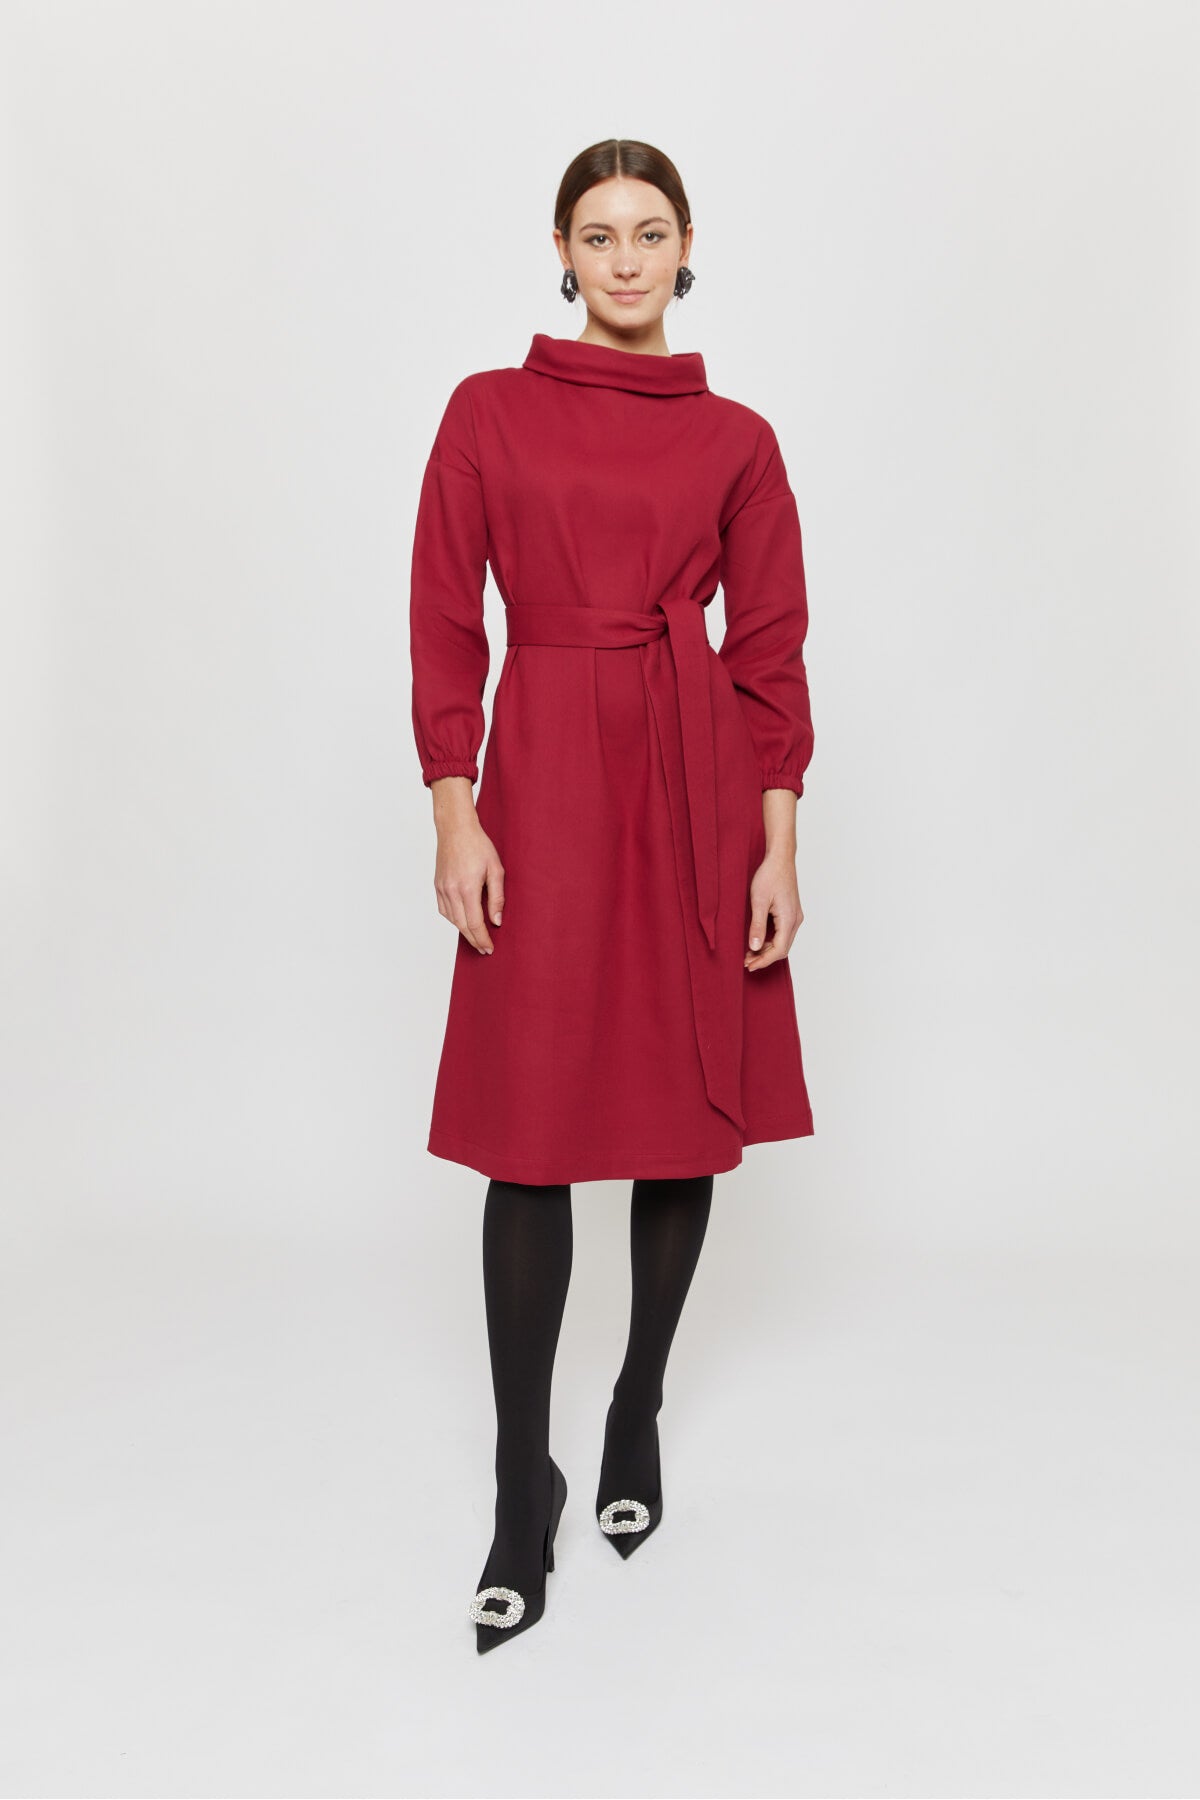 Rotes Kleid Langarm Winter mit Taschen. AYANI